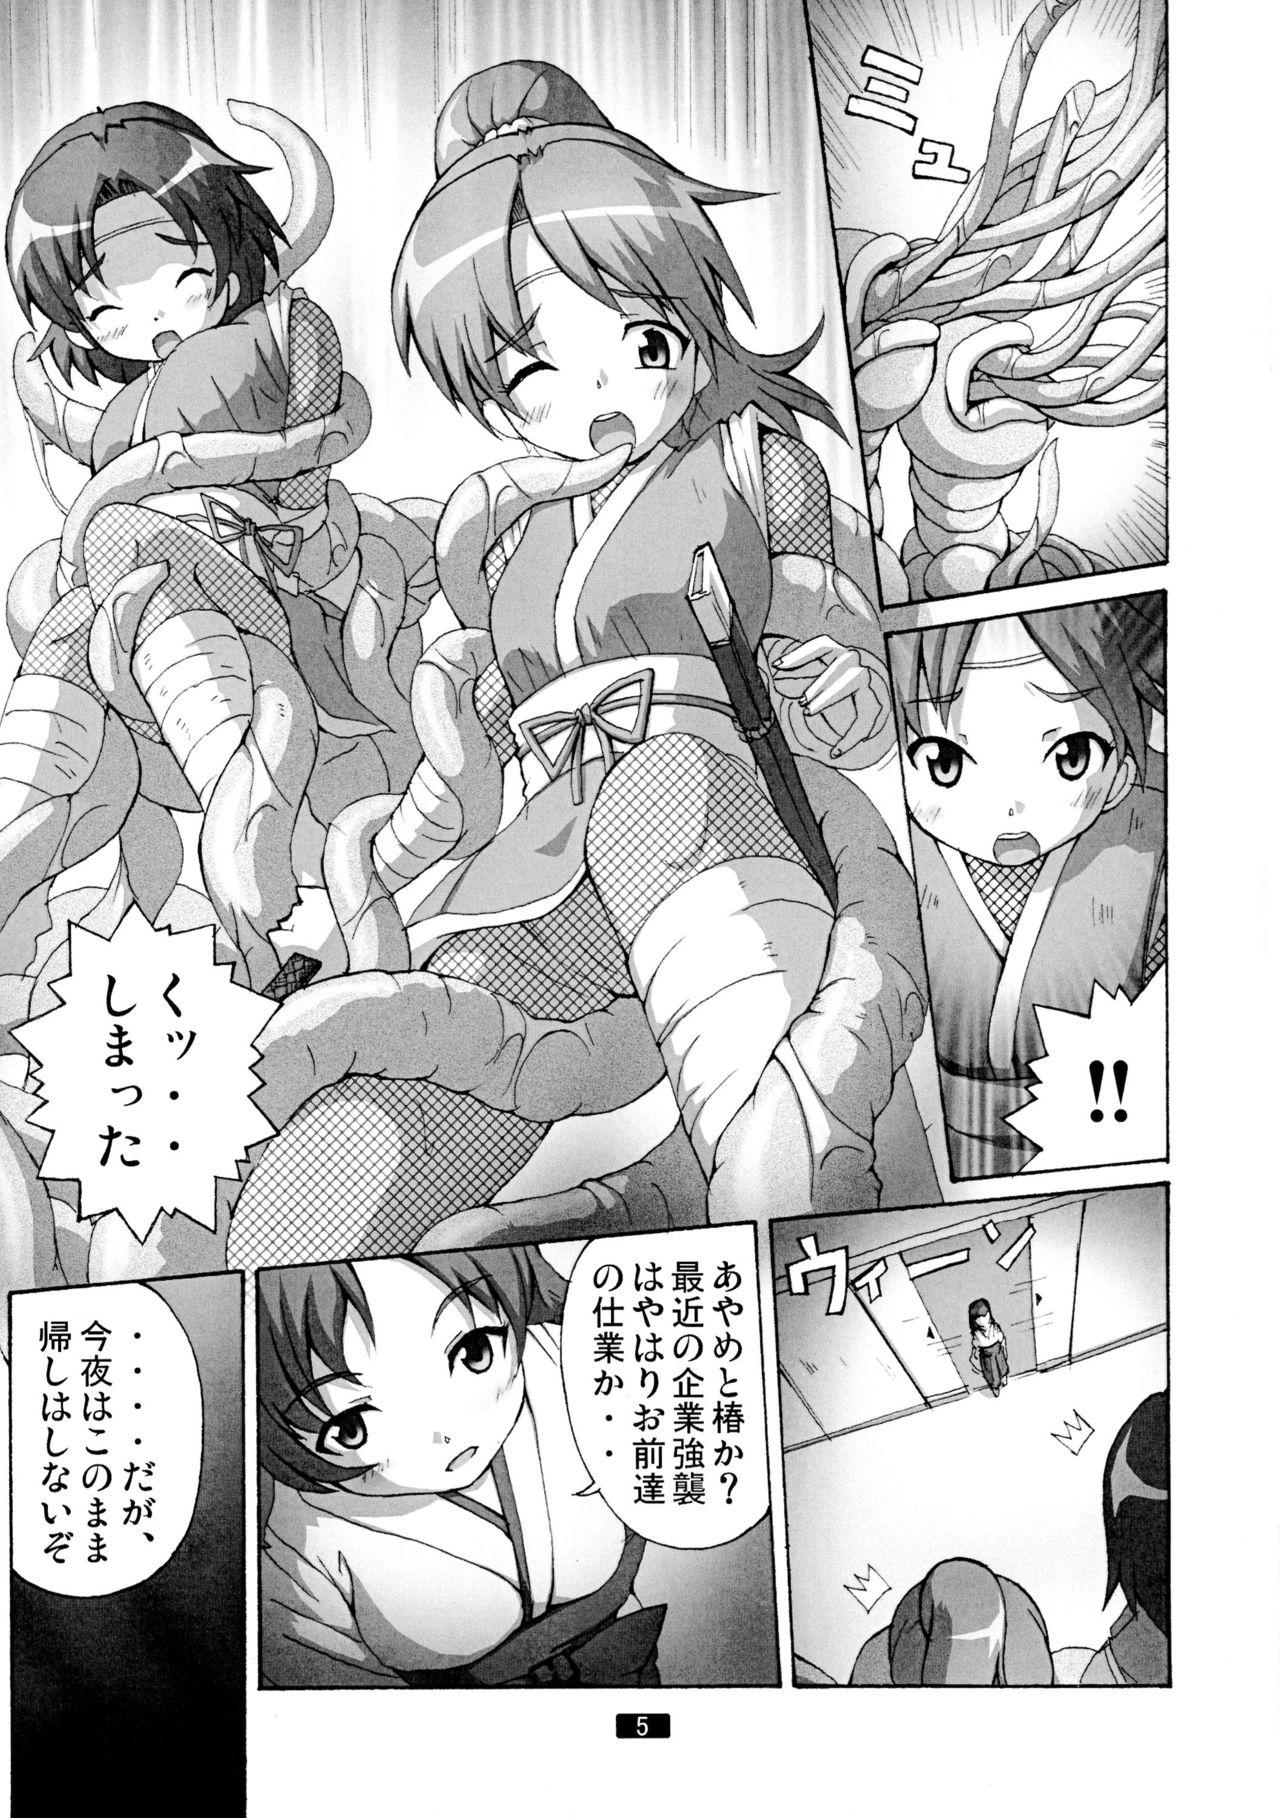 Anime Kaiun no Taimashi Nozomi 5 1/ 2 Highschool - Page 5